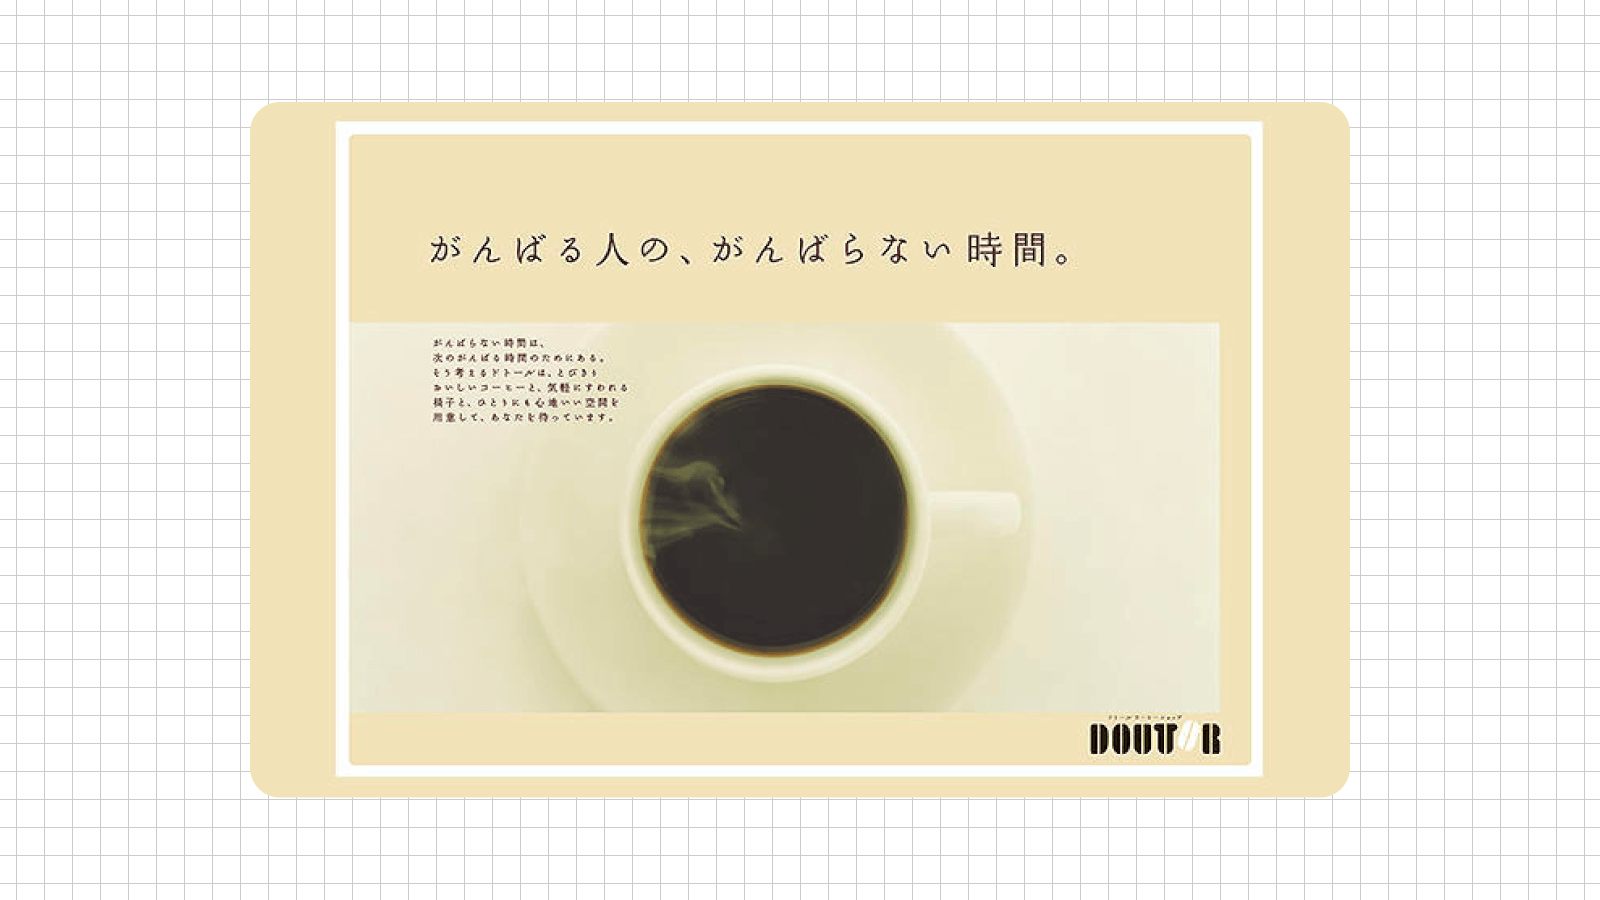 ドトールコーヒー広告